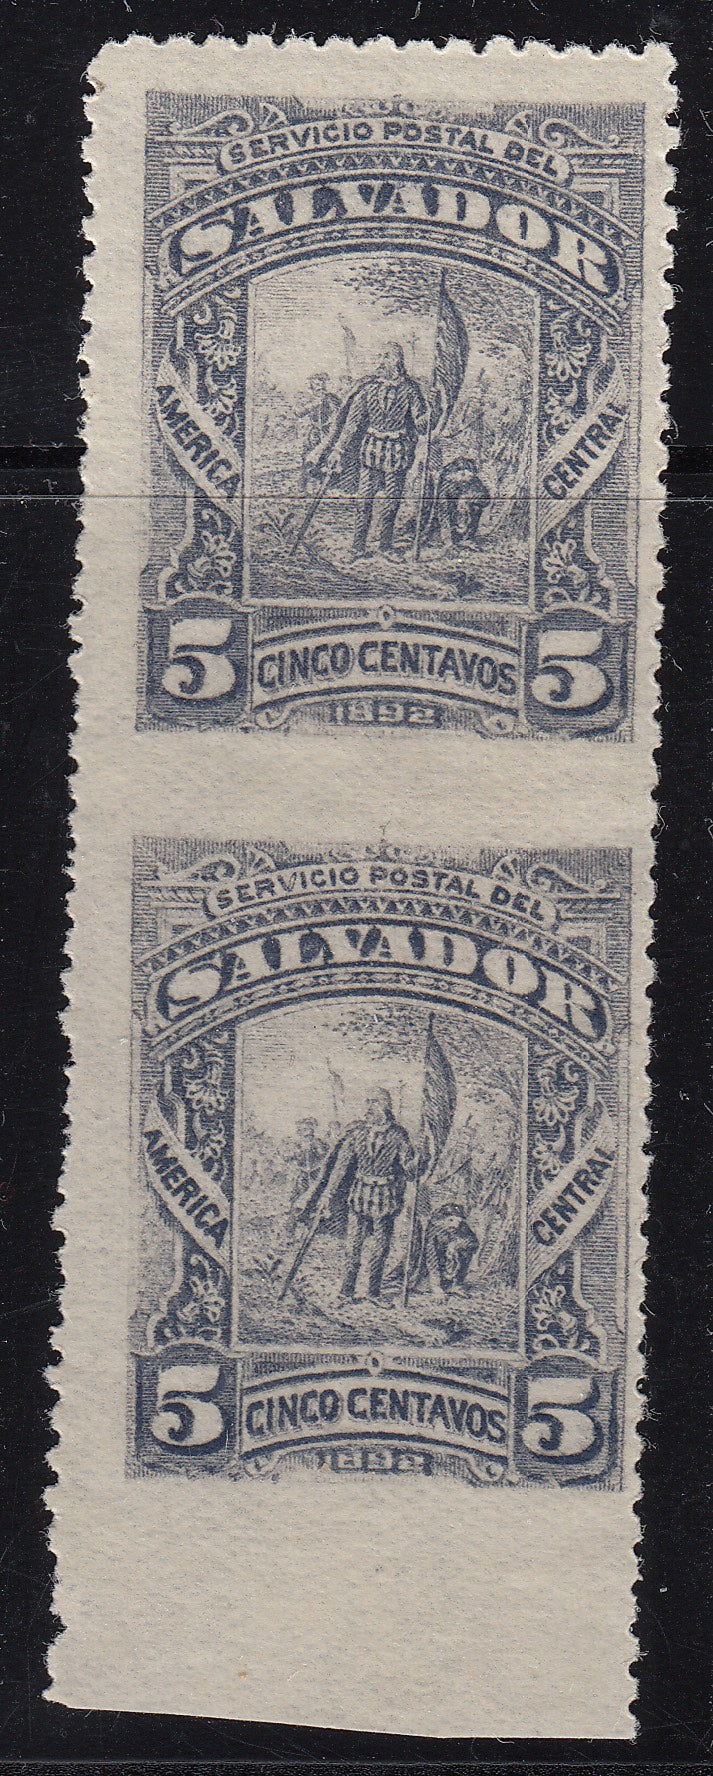 El Salvador 1892 5c Gray Imperforate Between Pair M Mint. Scott 63 var